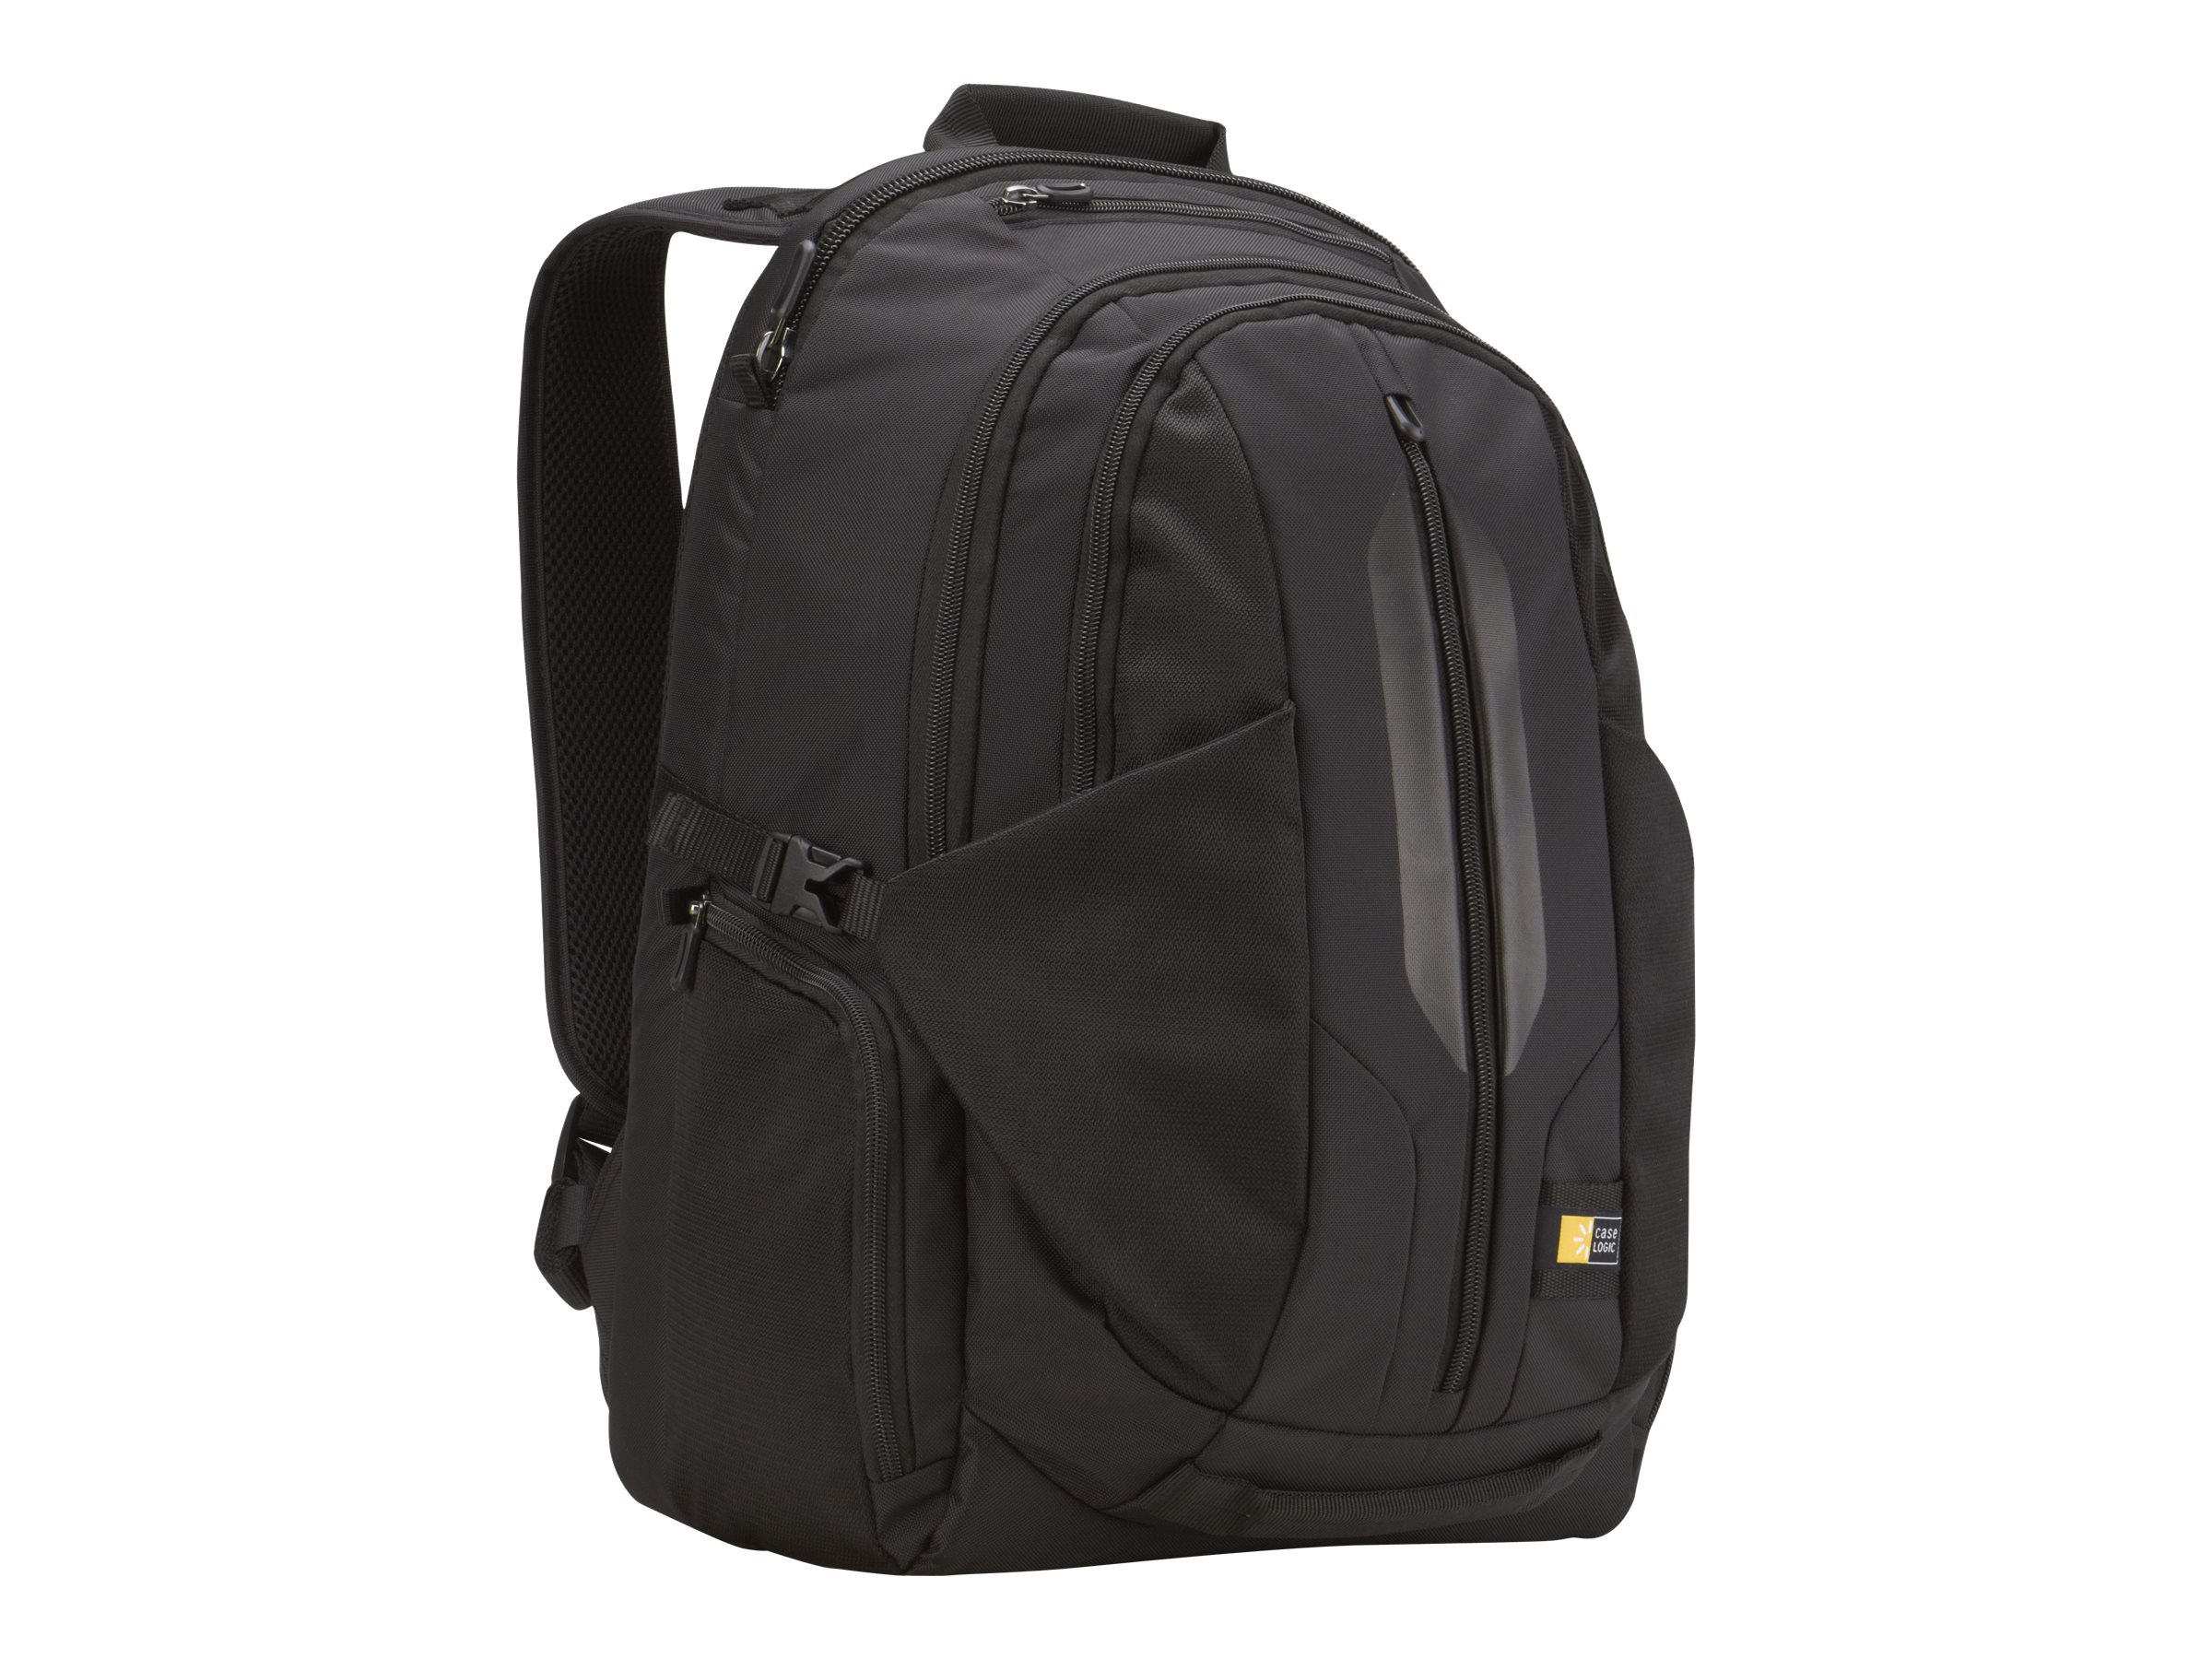 Case Logic 17.3" Laptop Backpack